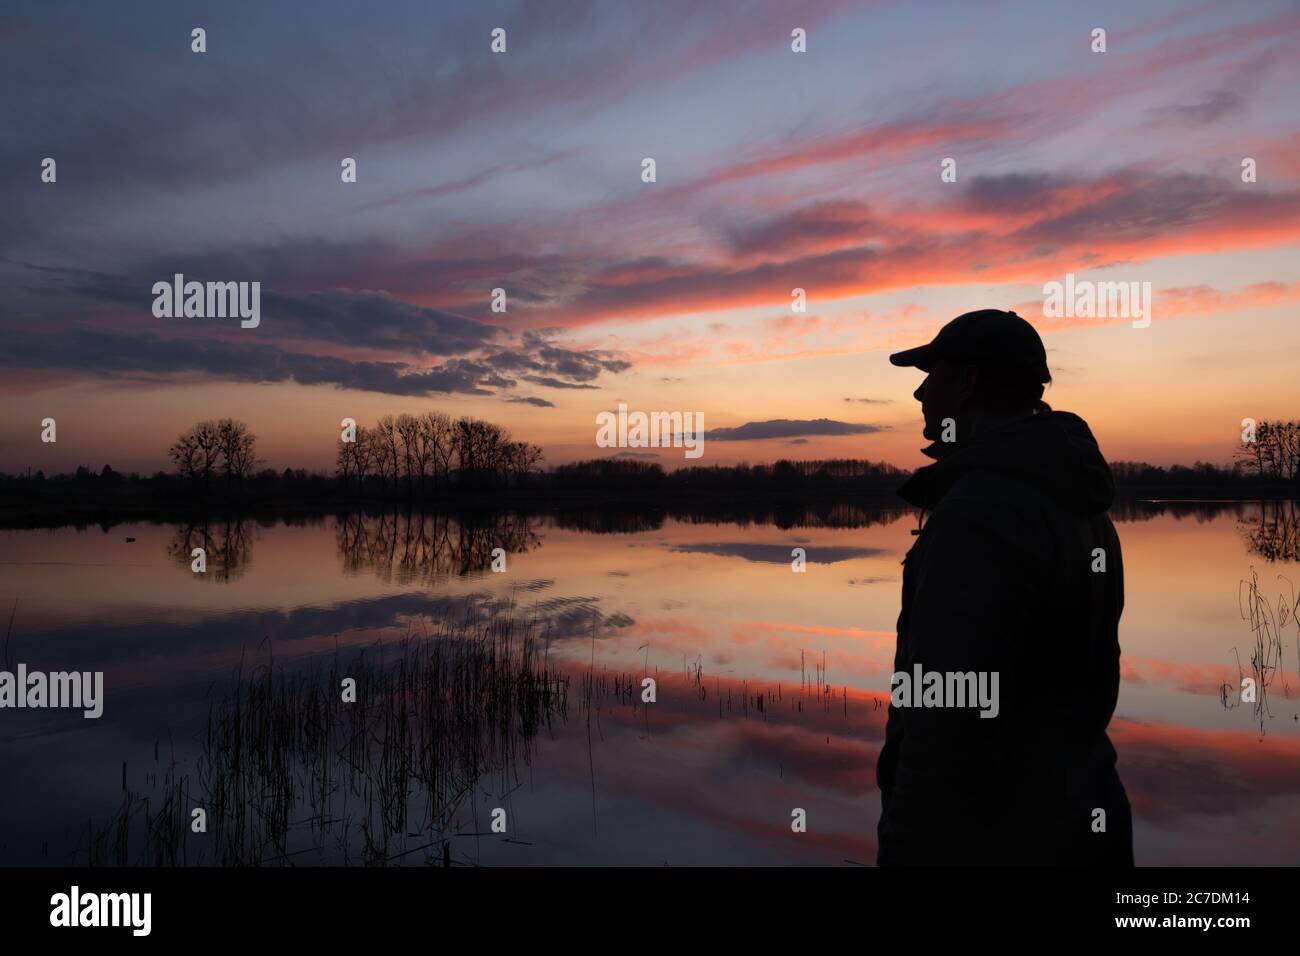 Die Silhouette eines Mannes am Ufer eines Sees und Himmel bei Sonnenuntergang, Frühling Abend Blick Stockfoto